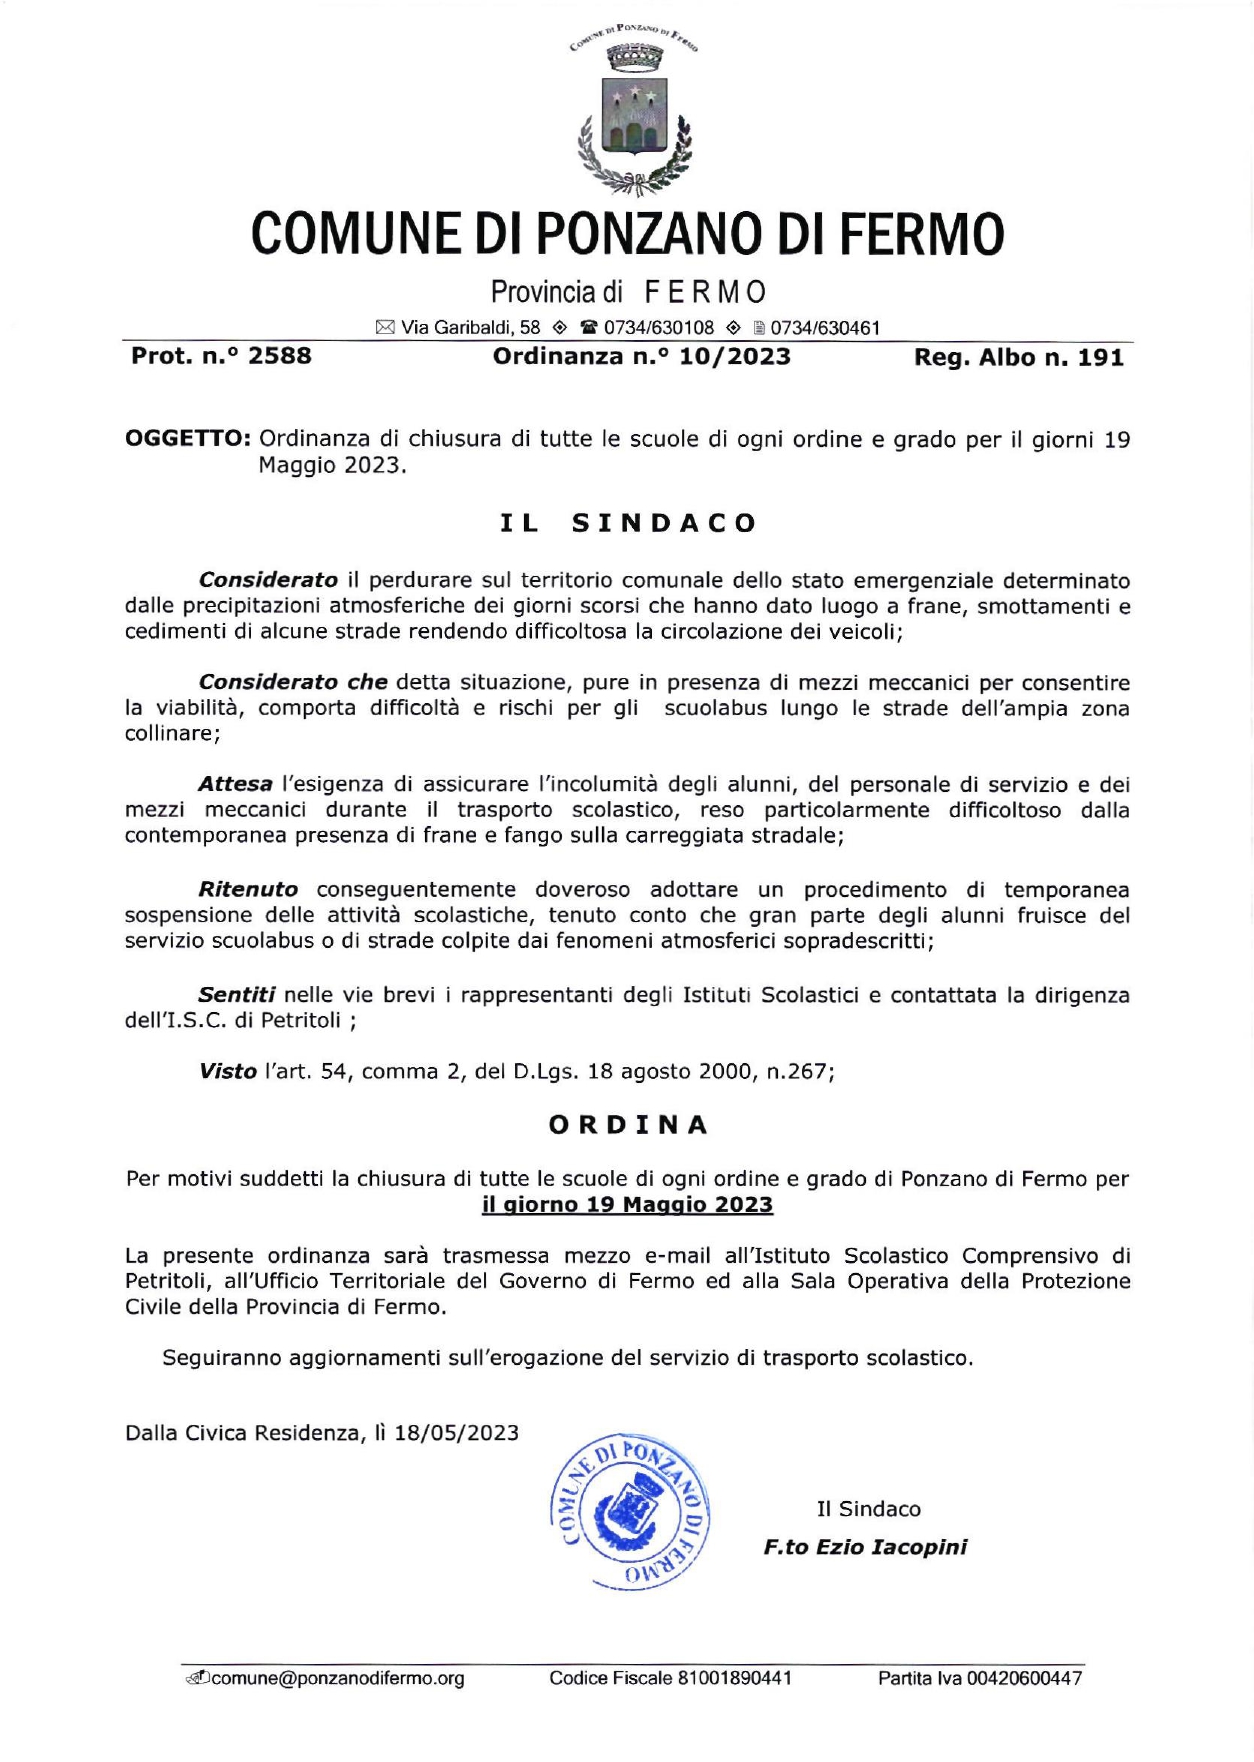 CHIUSURA SCUOLE DI OGNI ORDINE E GRADO E SOSPENSIONE SERVIZIO TRASPORTO SCOLASTICO - 19/05/2023